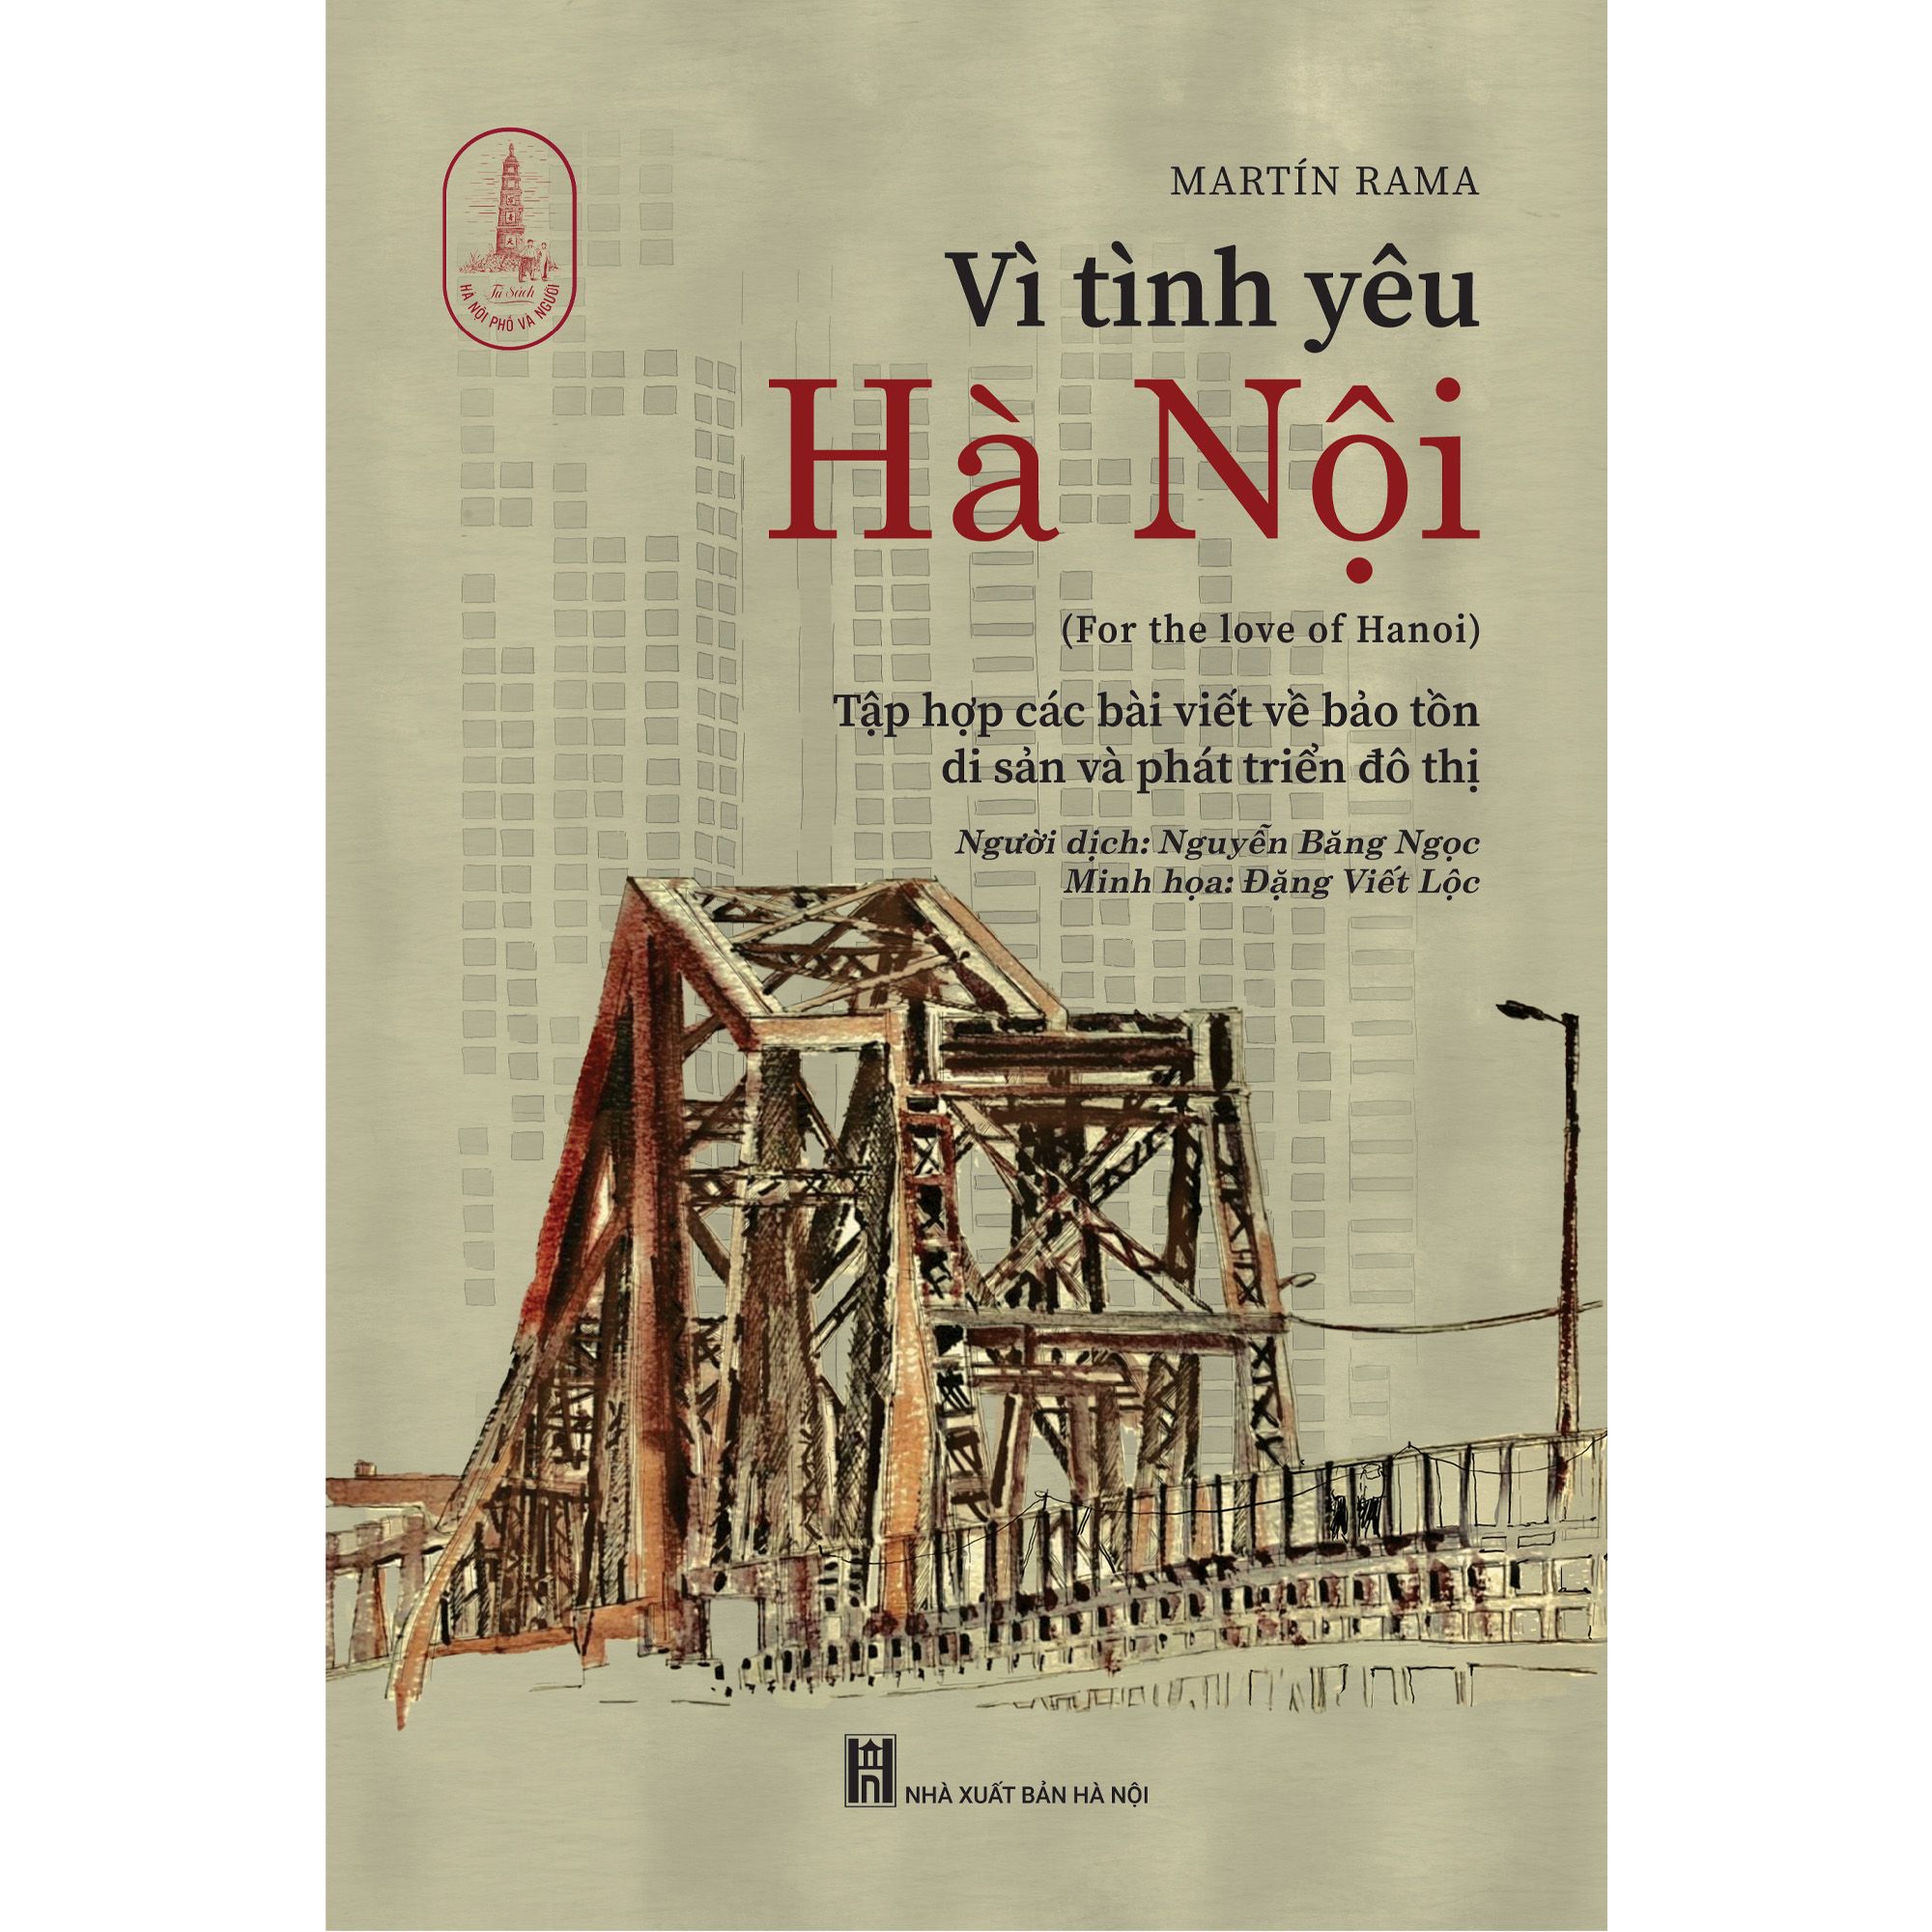 Vì tình yêu Hà Nội (For the love of Hanoi)